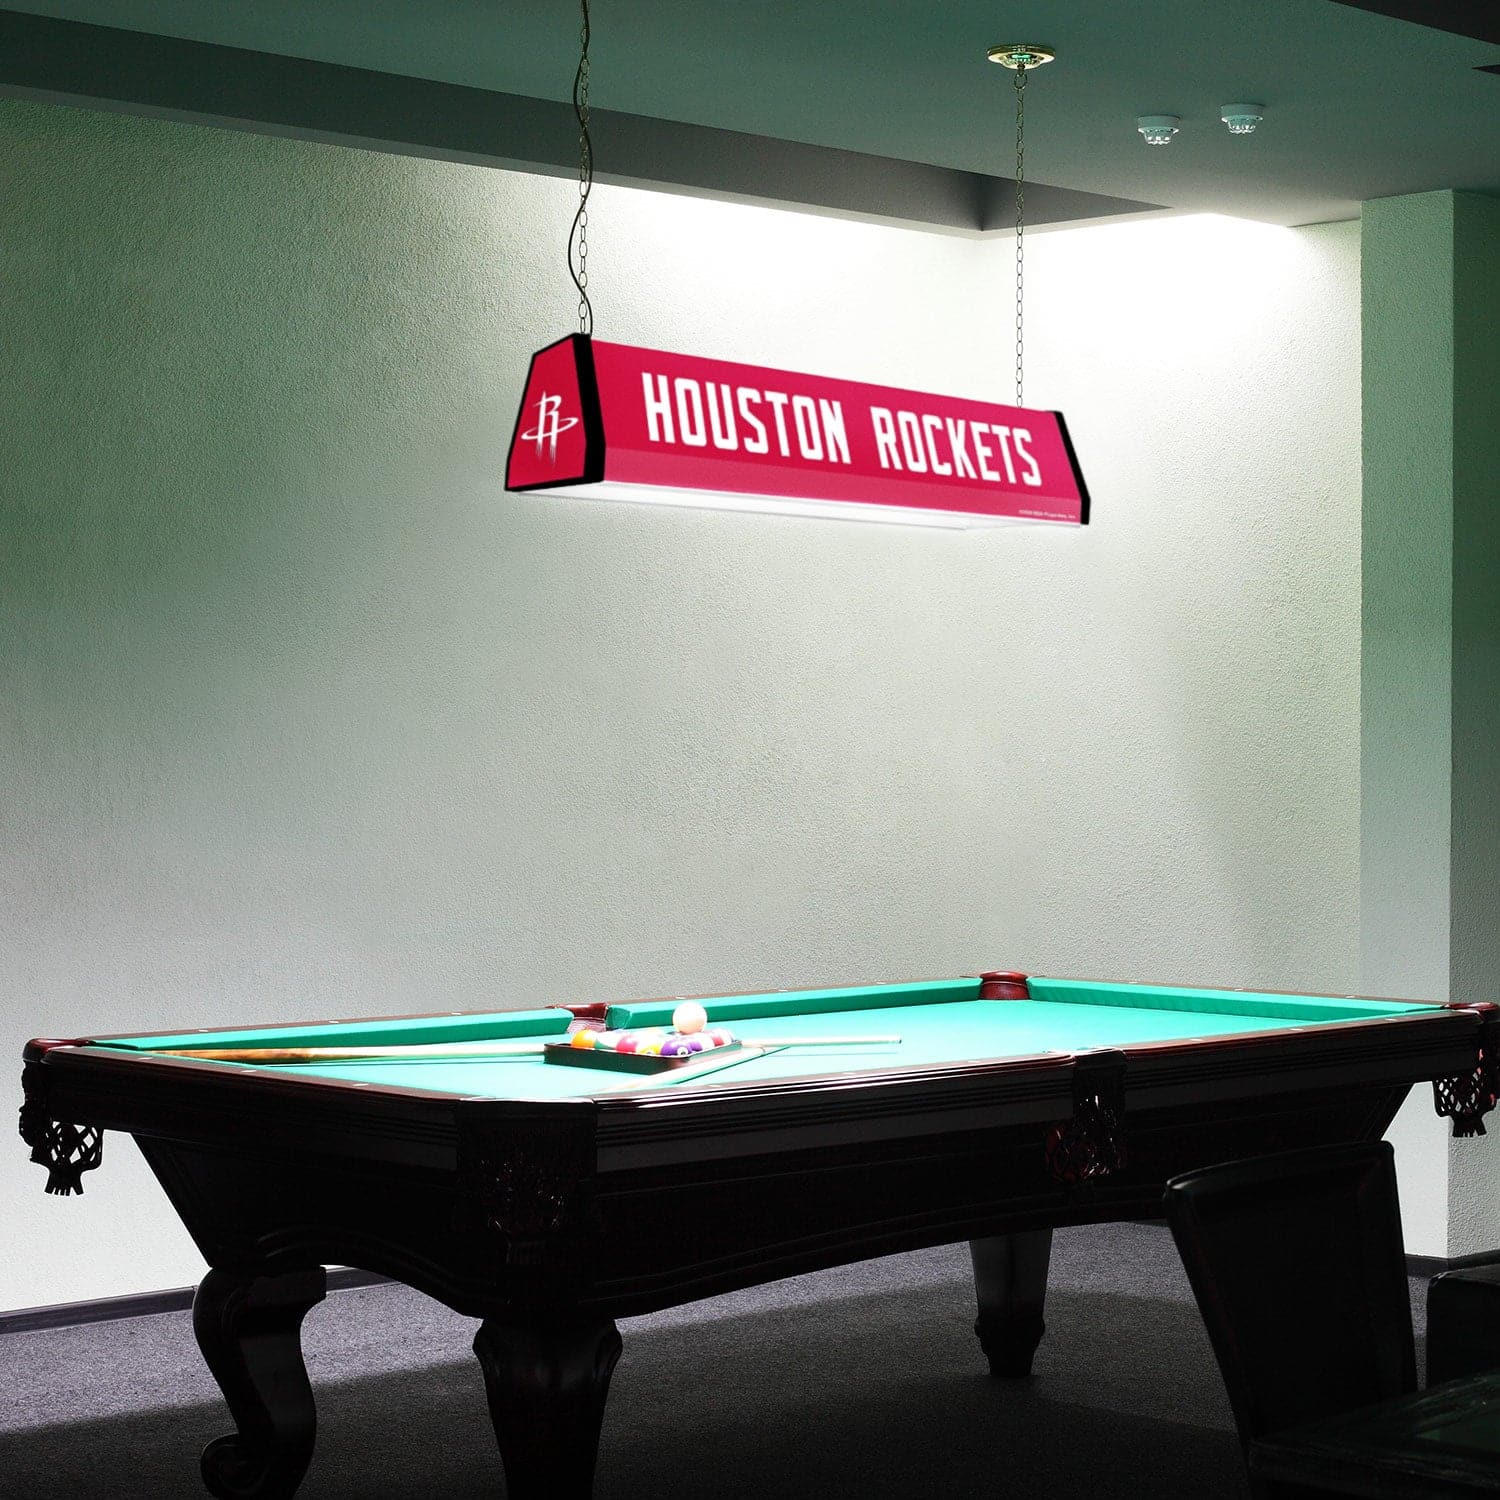 Houston Rockets: Standard Pool Table Light - The Fan-Brand